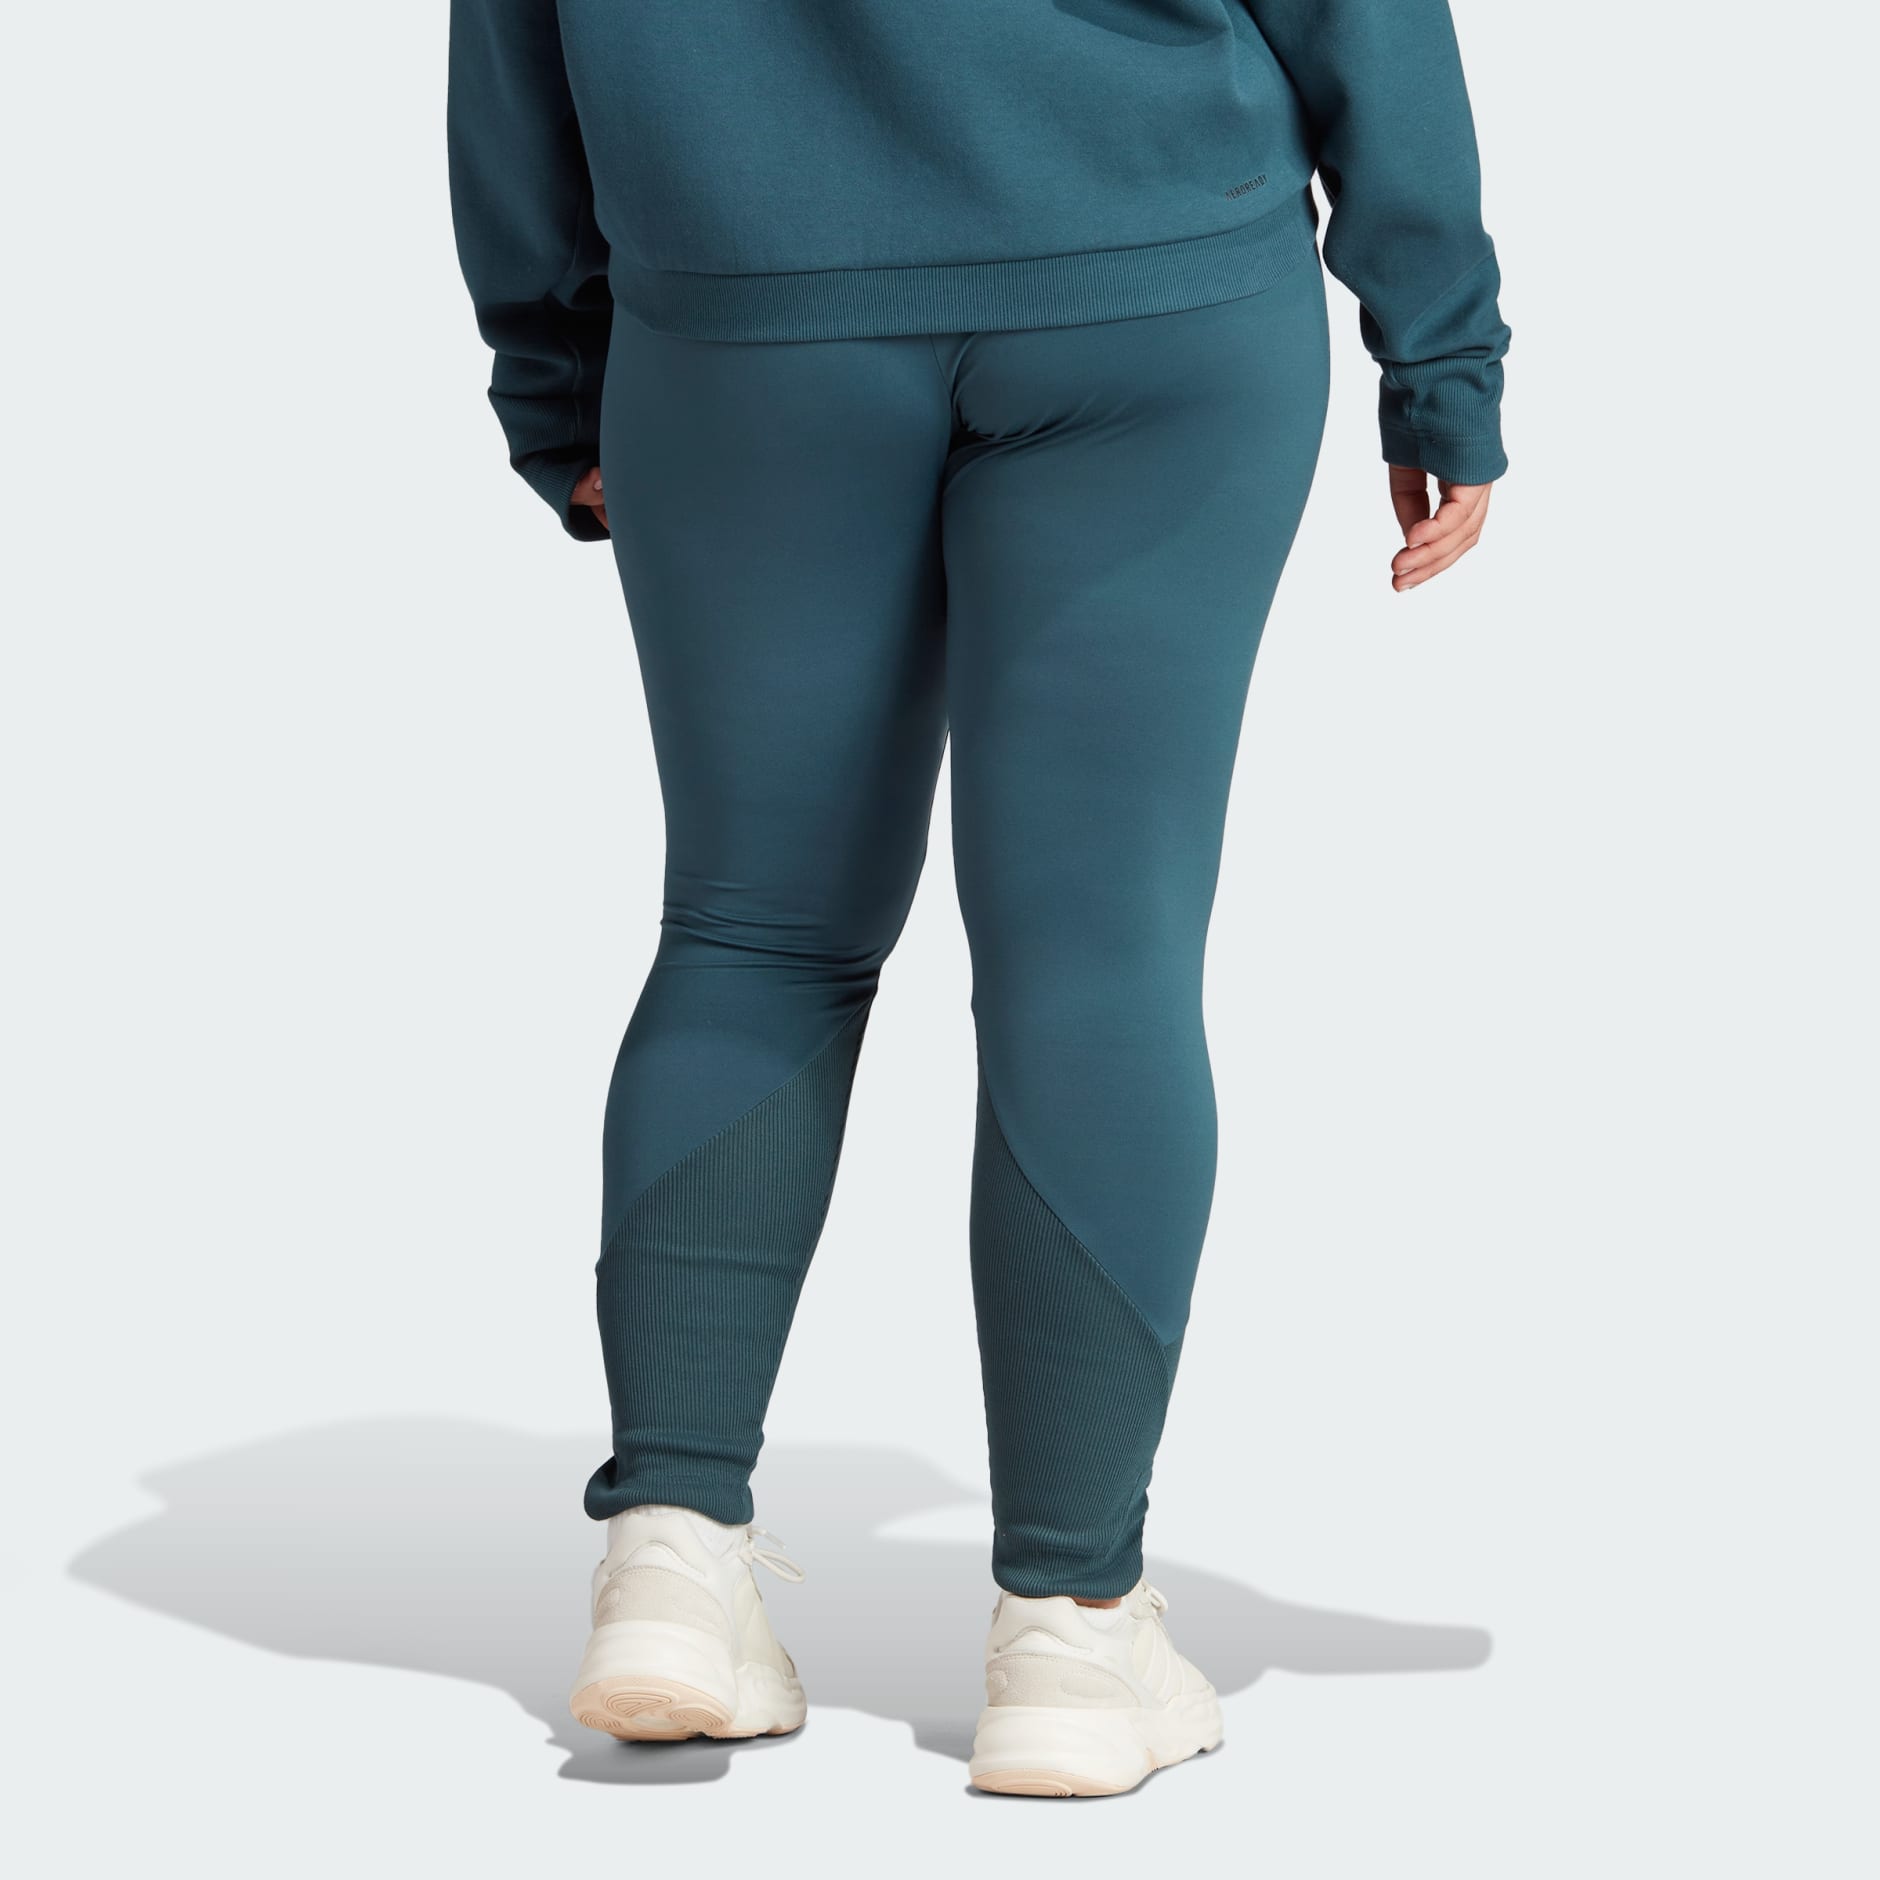 adidas Z.N.E. Leggings (Plus Size) - Turquoise